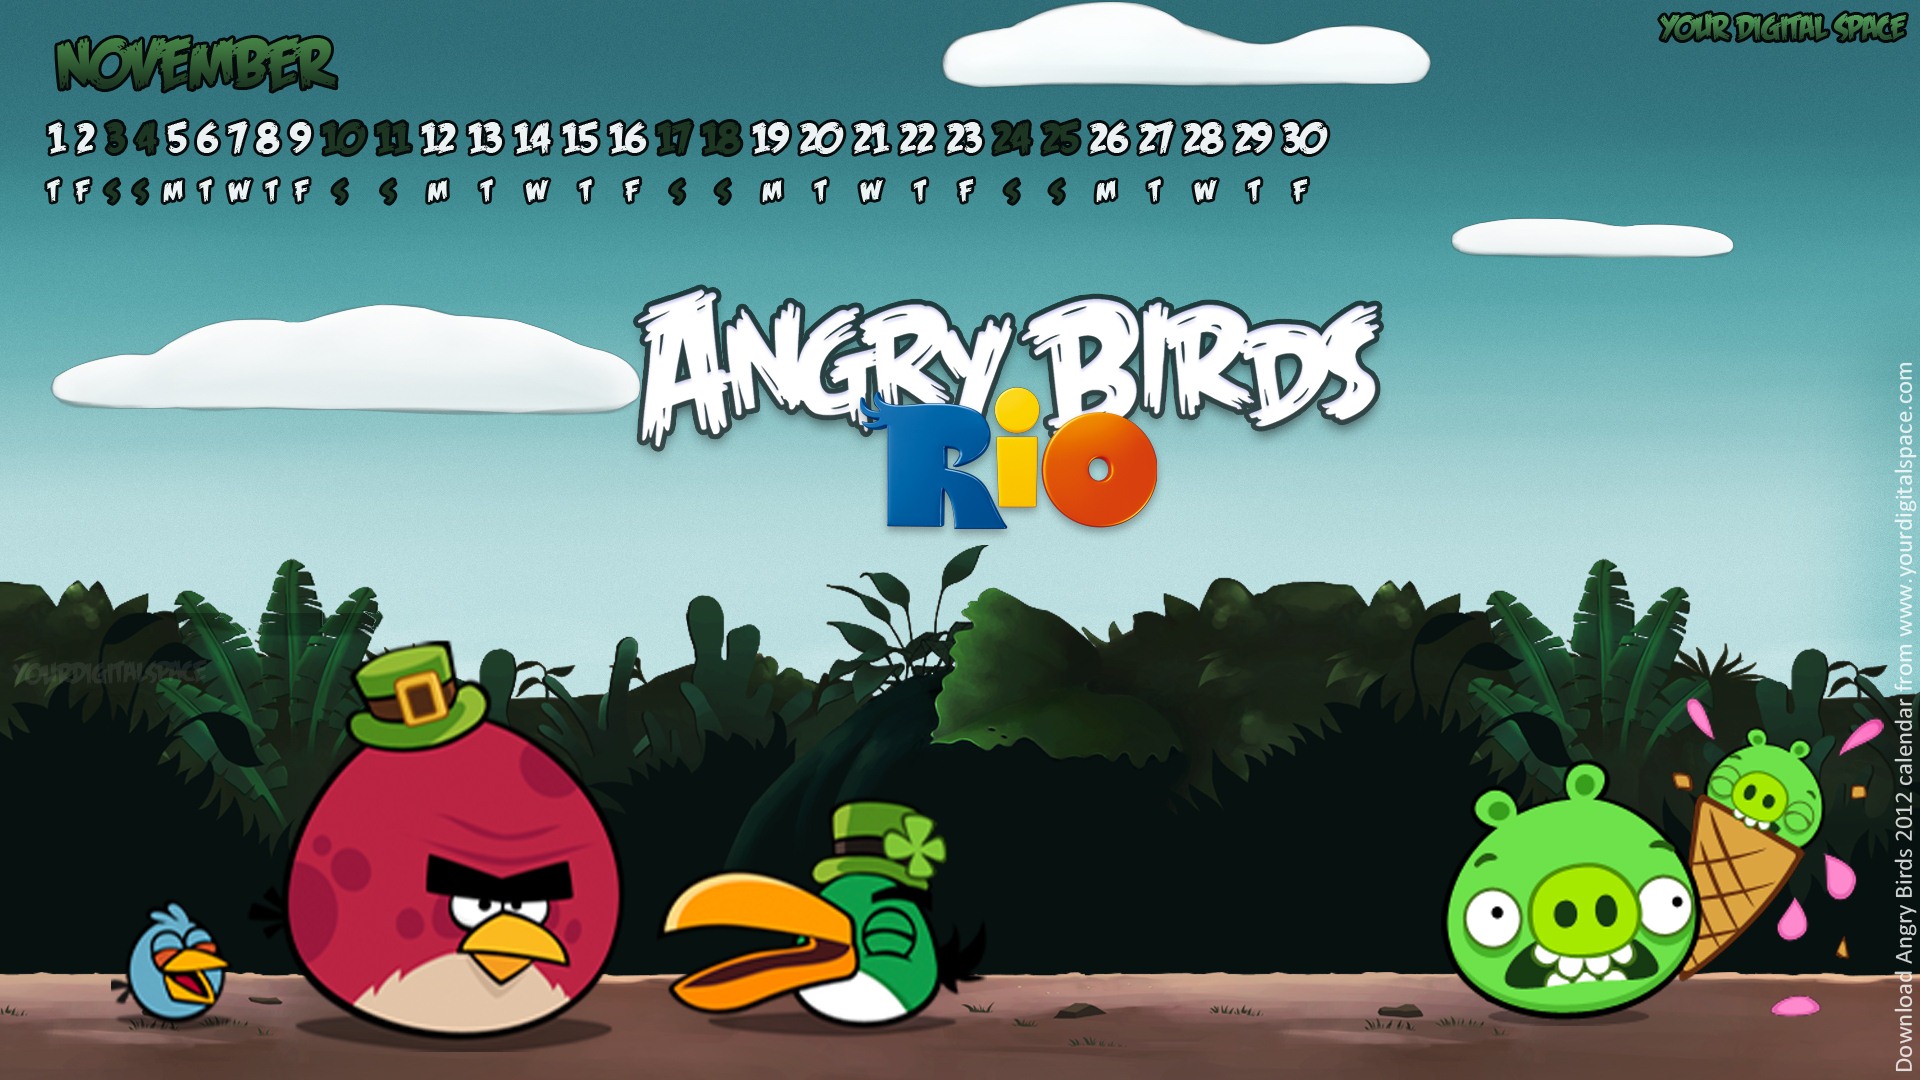 Angry Birds 2012 calendario fondos de escritorio #10 - 1920x1080